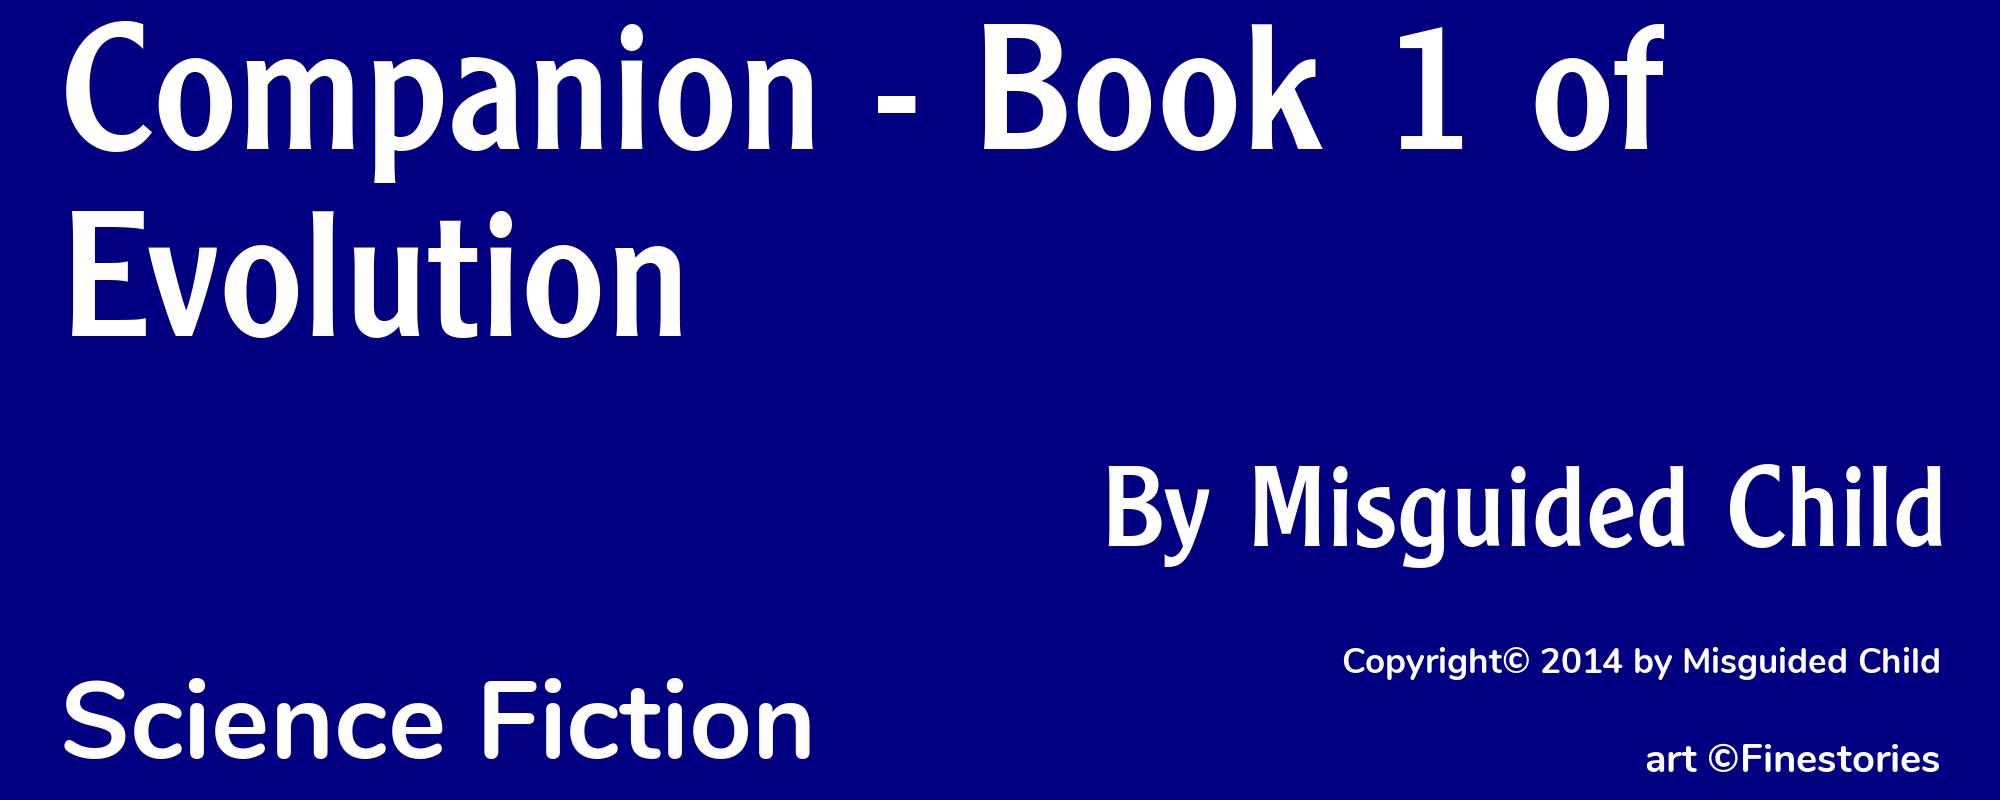 Companion - Book 1 of Evolution - Cover